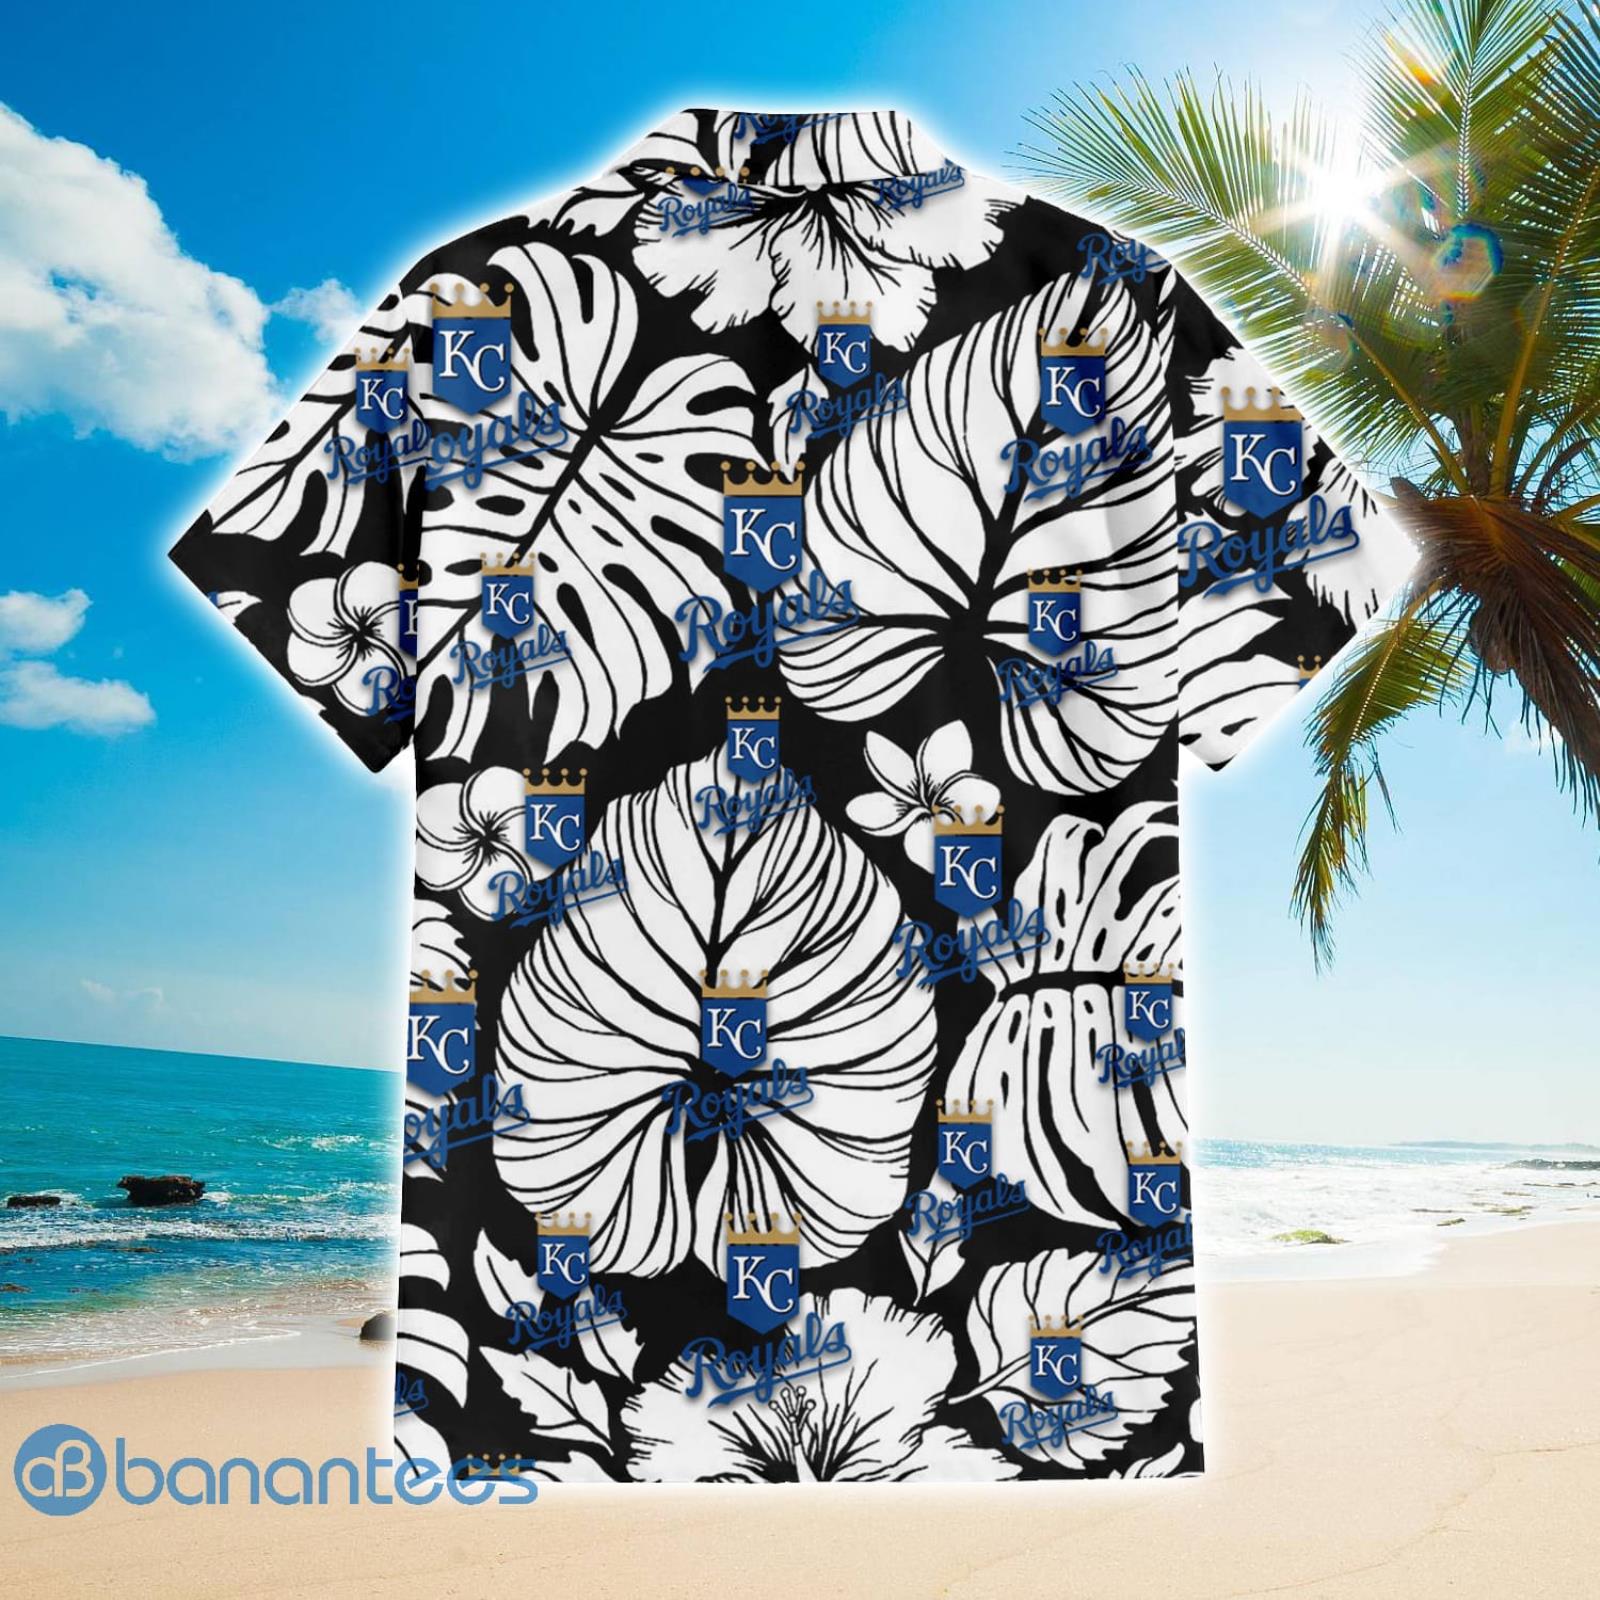 Kansas City Royals 3D Hawaiian Shirts flower summer gift for fans